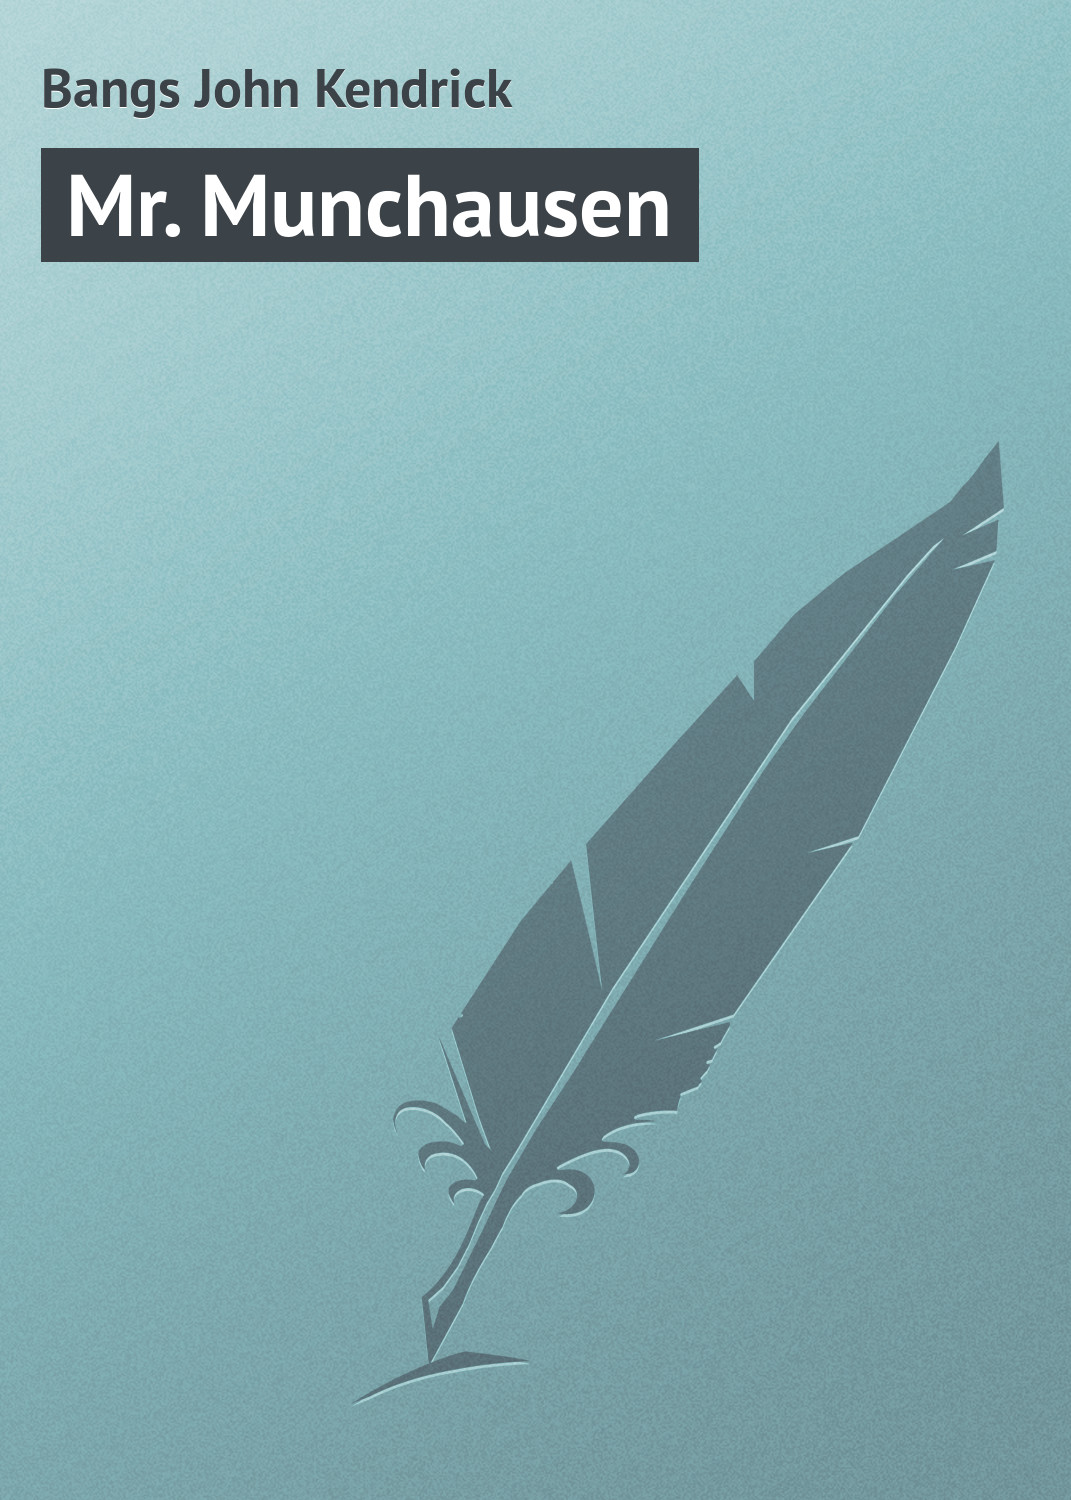 Книга Mr. Munchausen из серии , созданная John Bangs, может относится к жанру Зарубежная классика, Зарубежный юмор, Иностранные языки. Стоимость электронной книги Mr. Munchausen с идентификатором 23159643 составляет 5.99 руб.